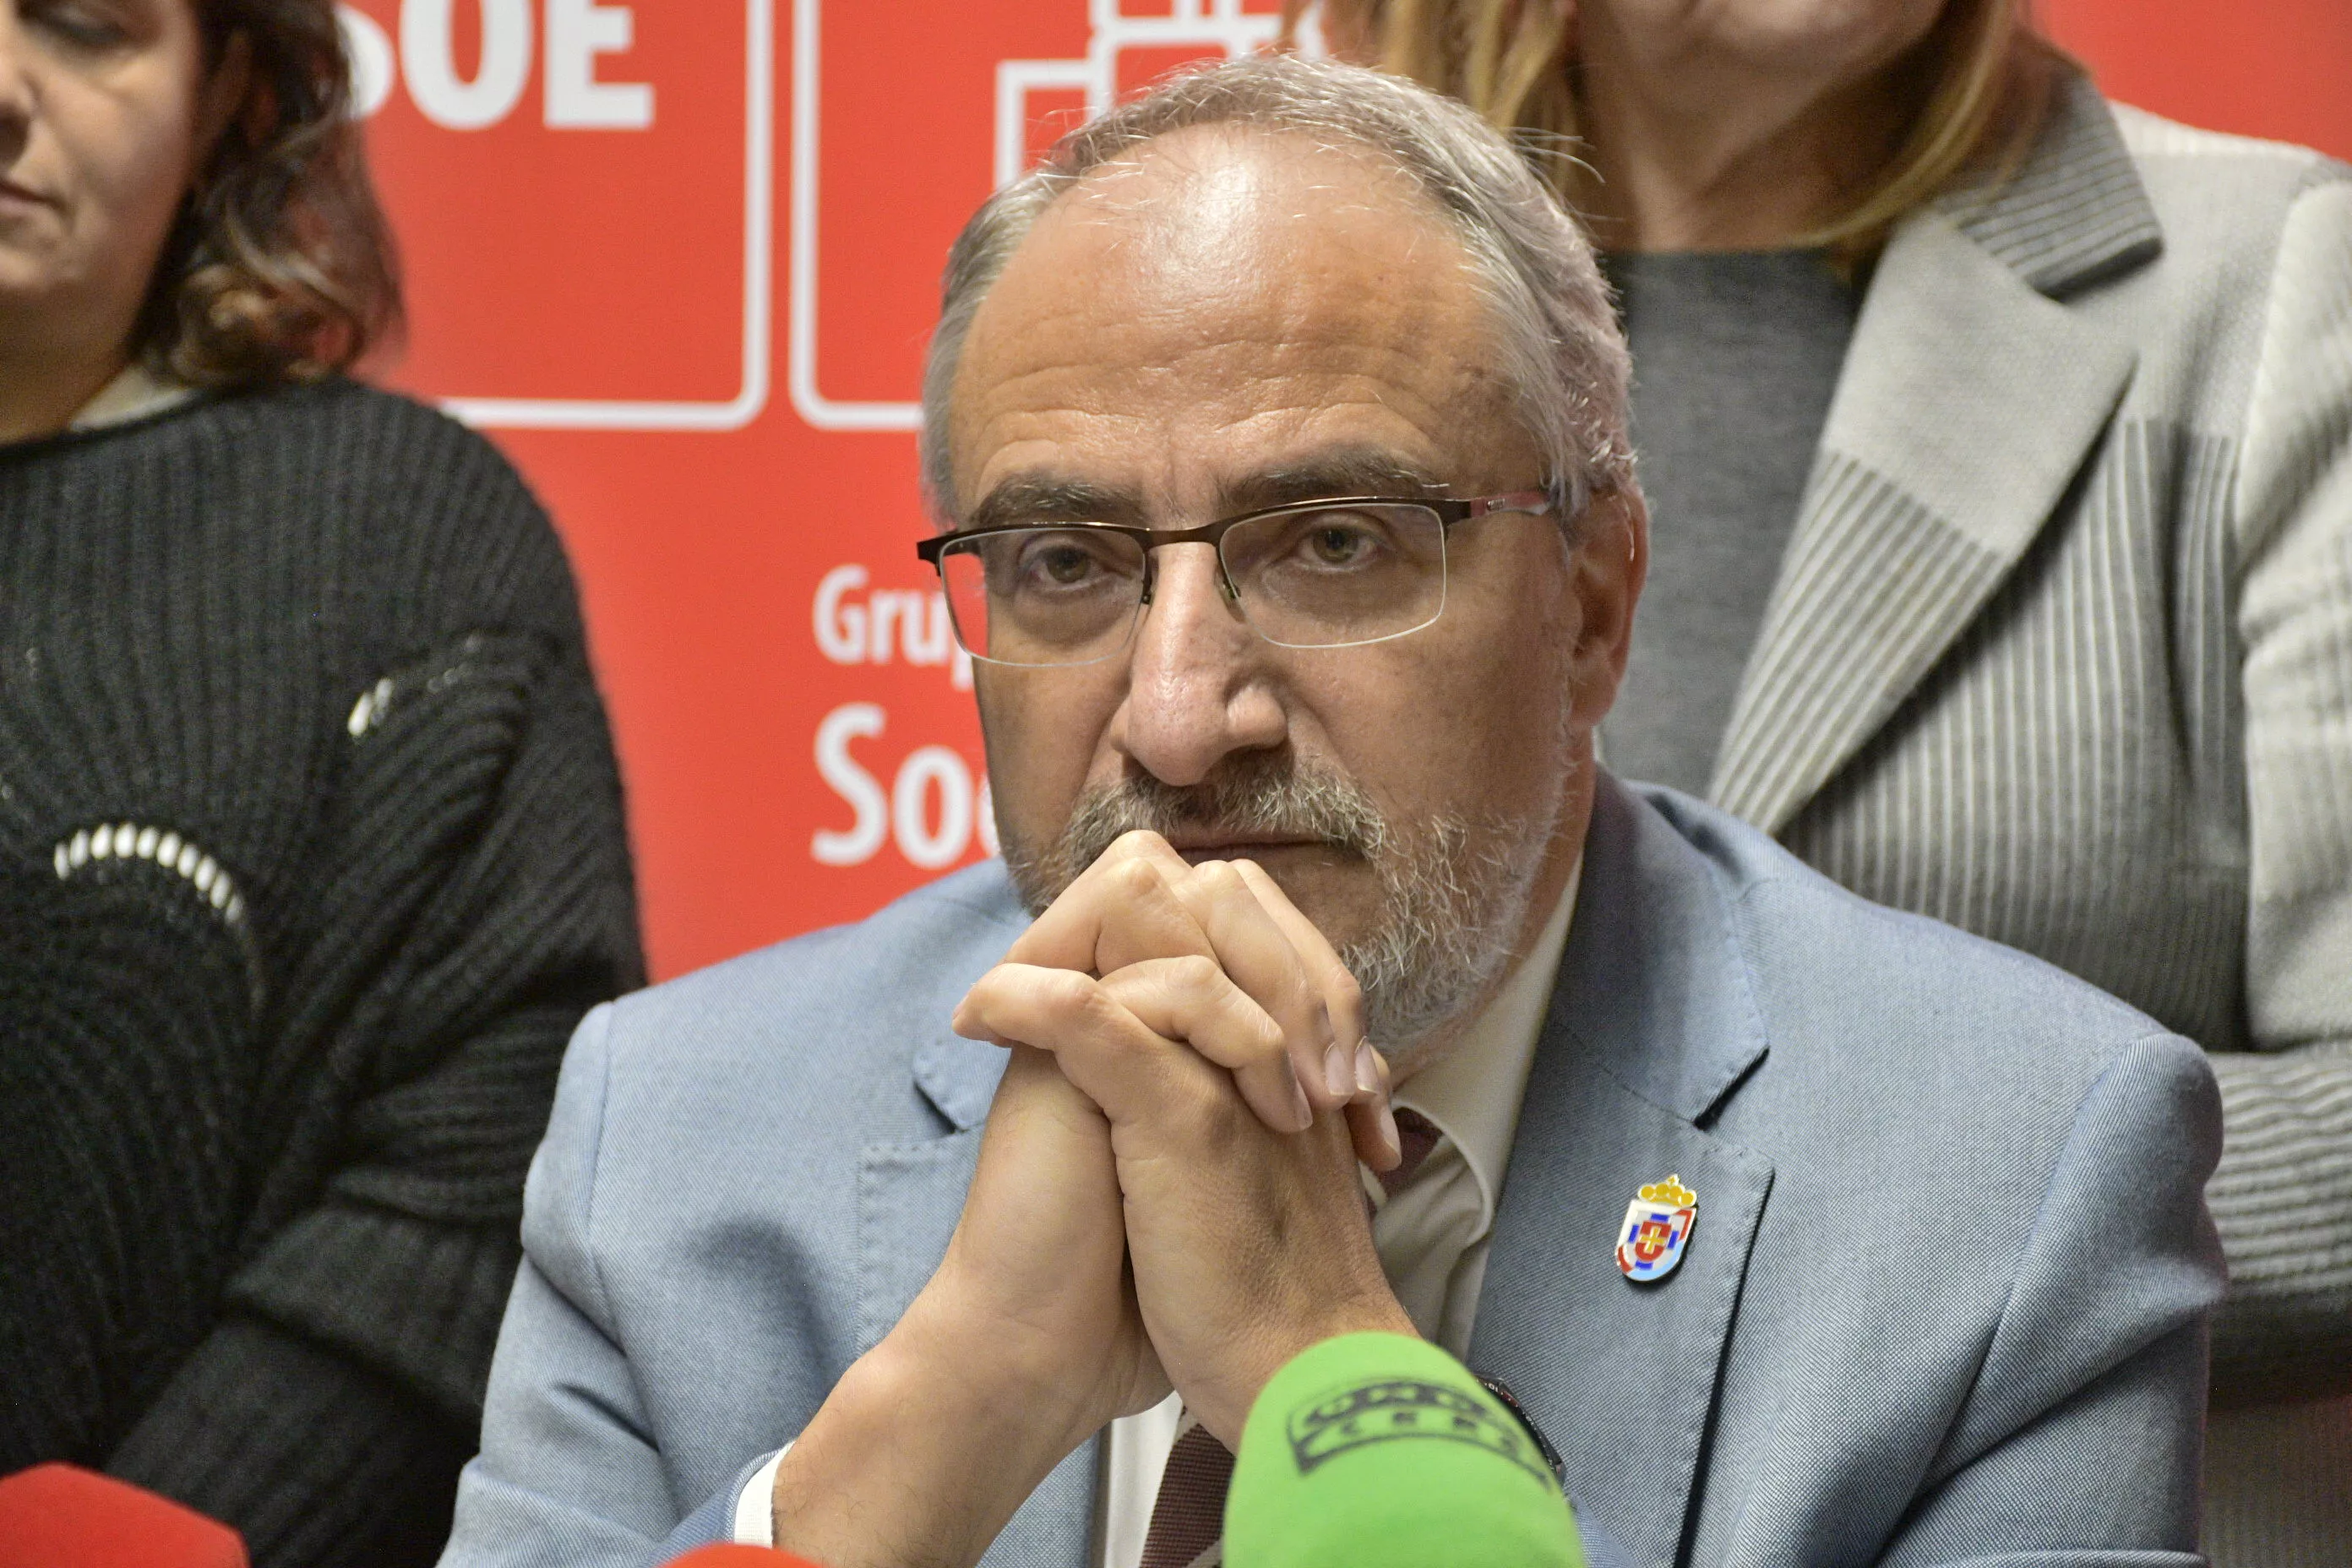 Presupuestos PSOE (3)